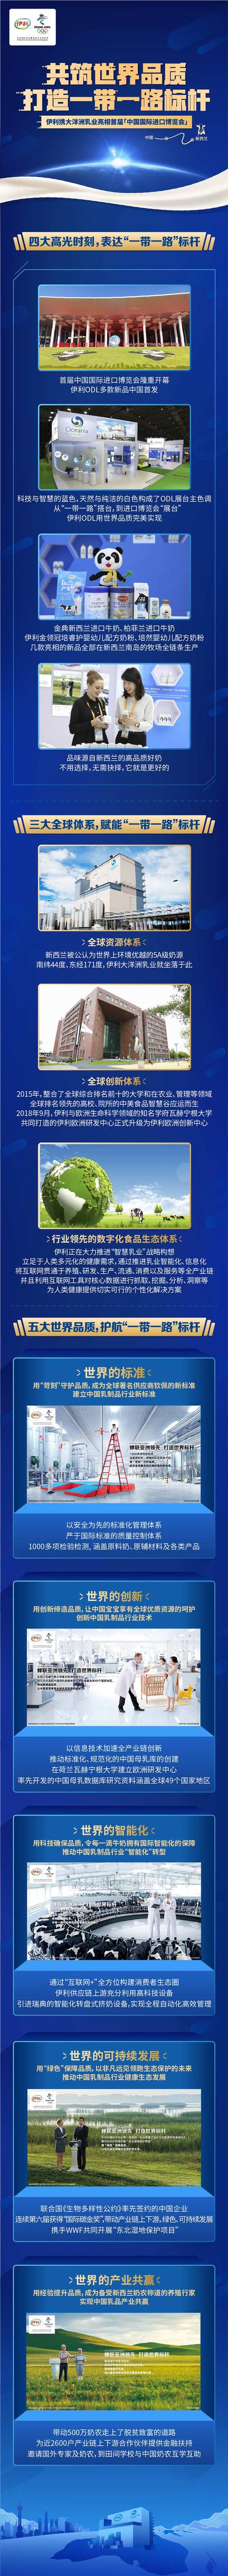 进口博览会上海开幕 伊利用“世界品质”驱动全球乳业发展